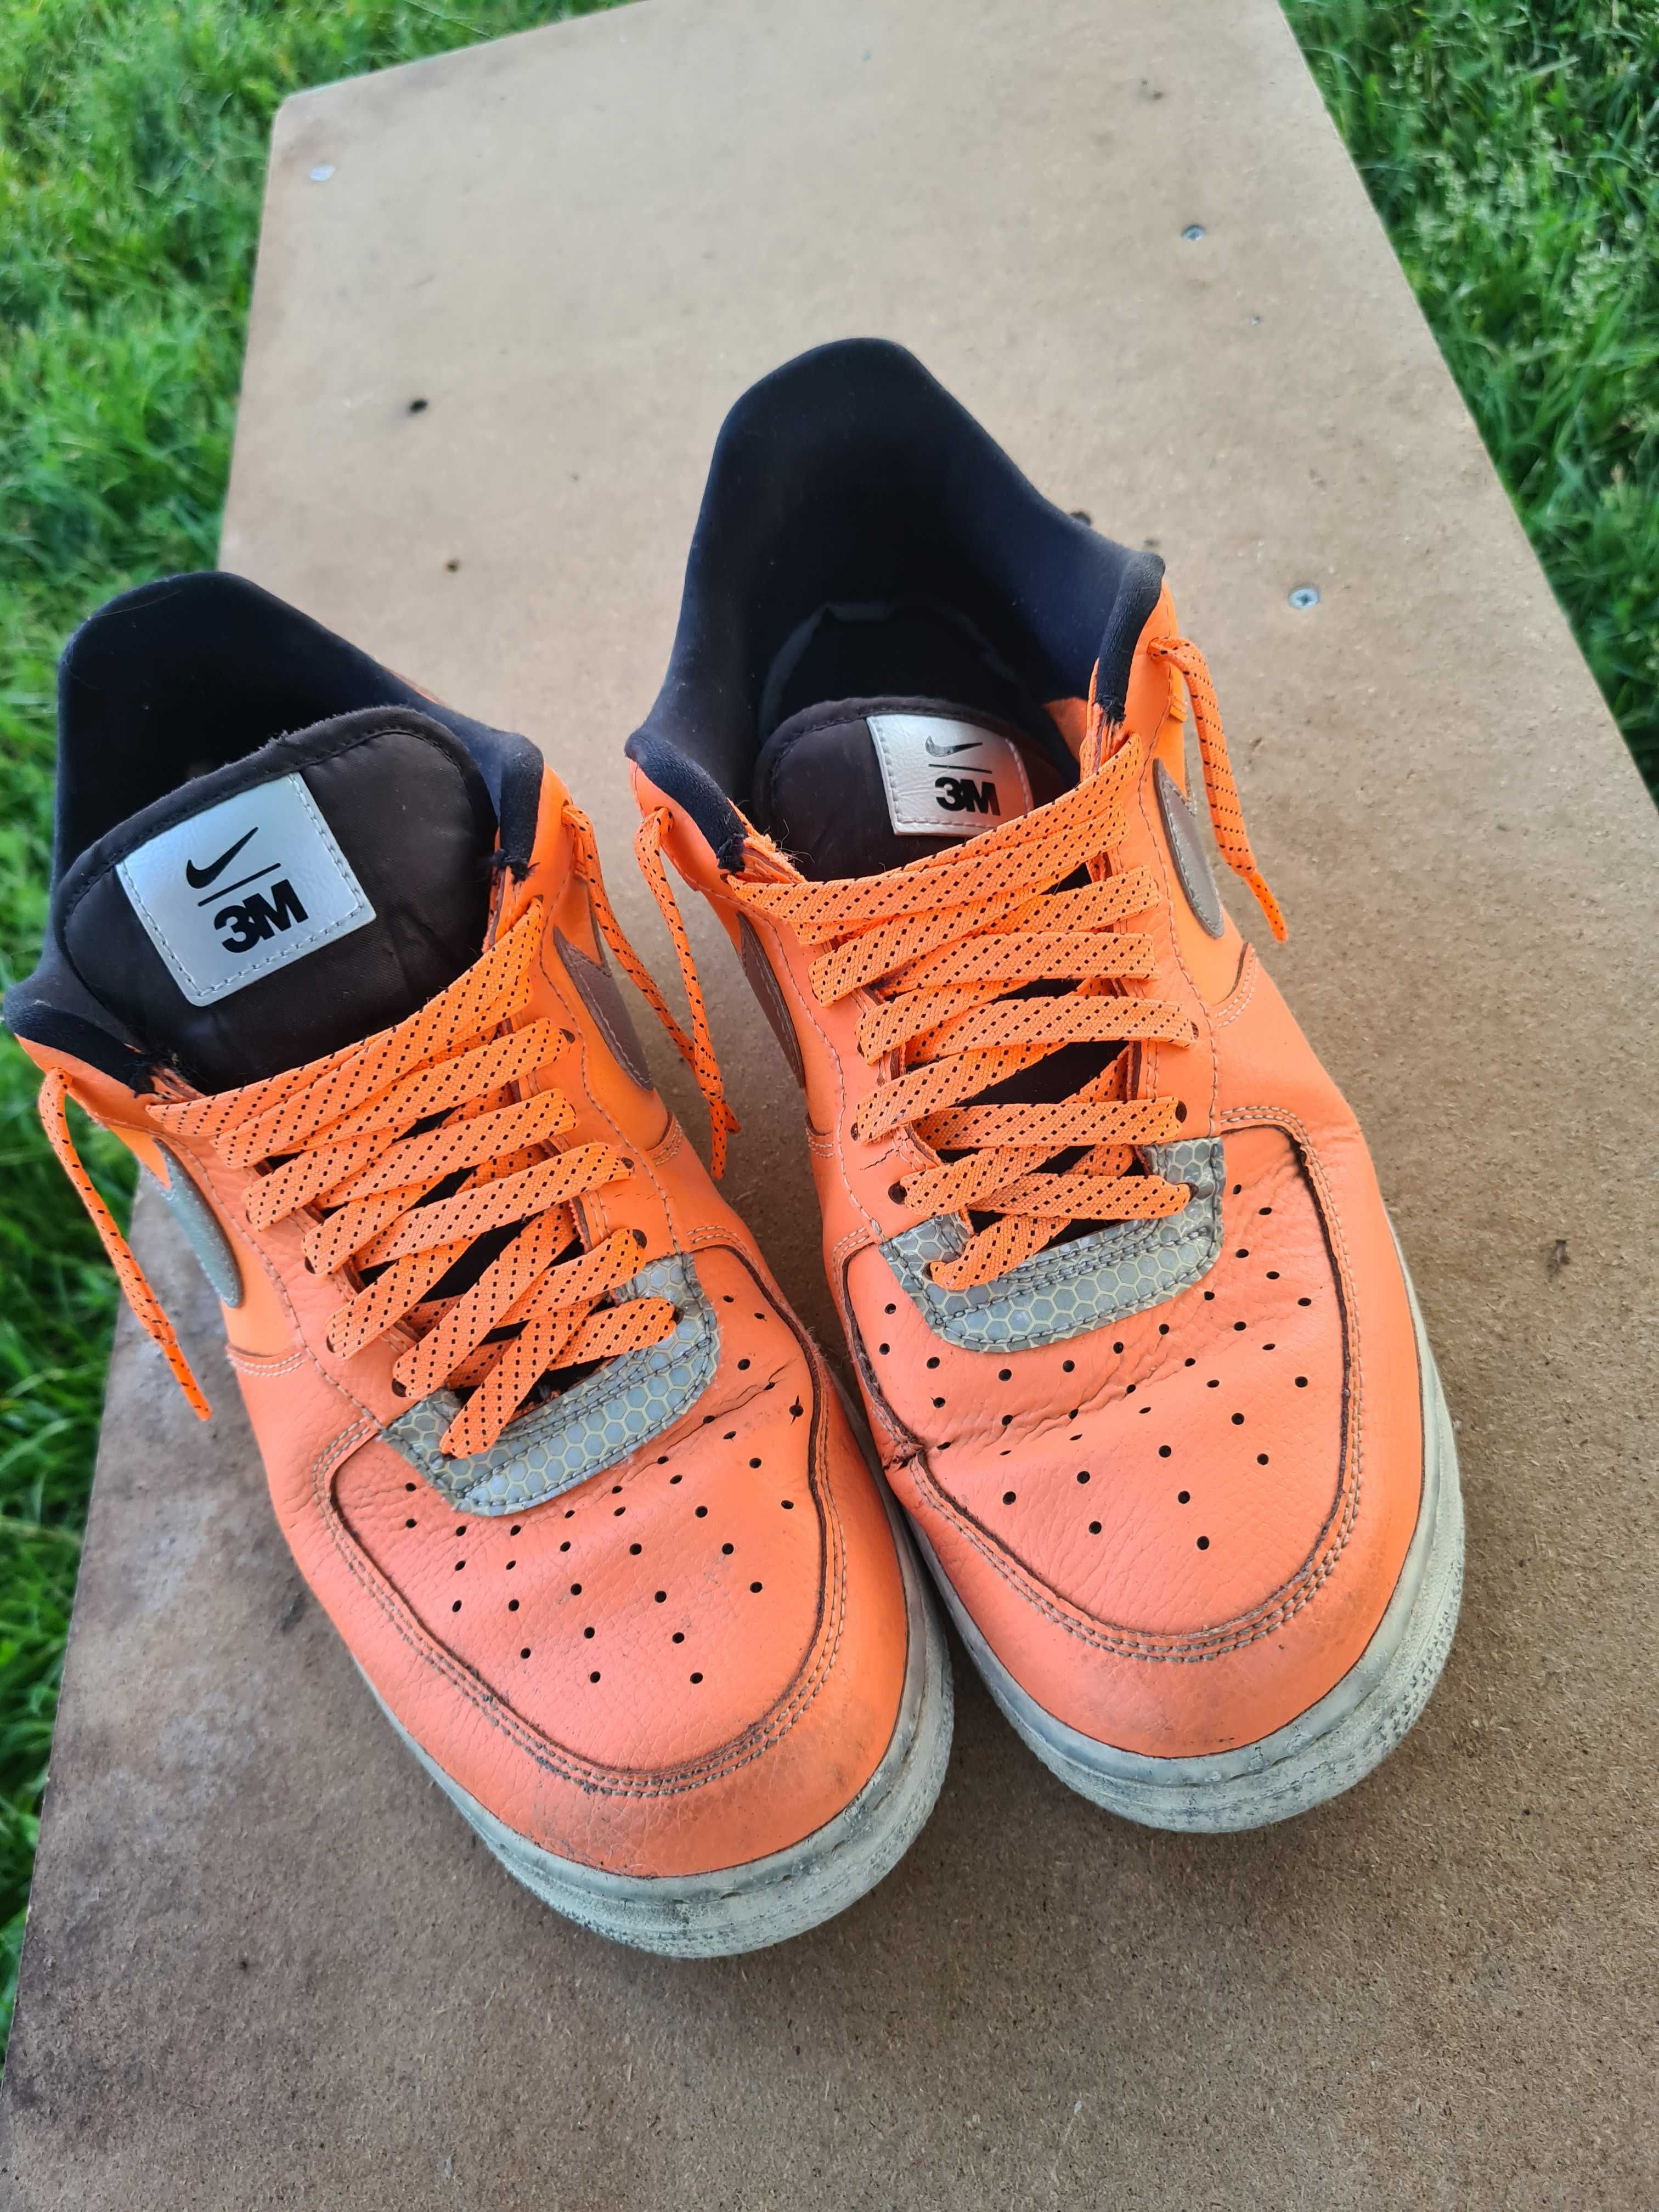 Nike af1 orange and black